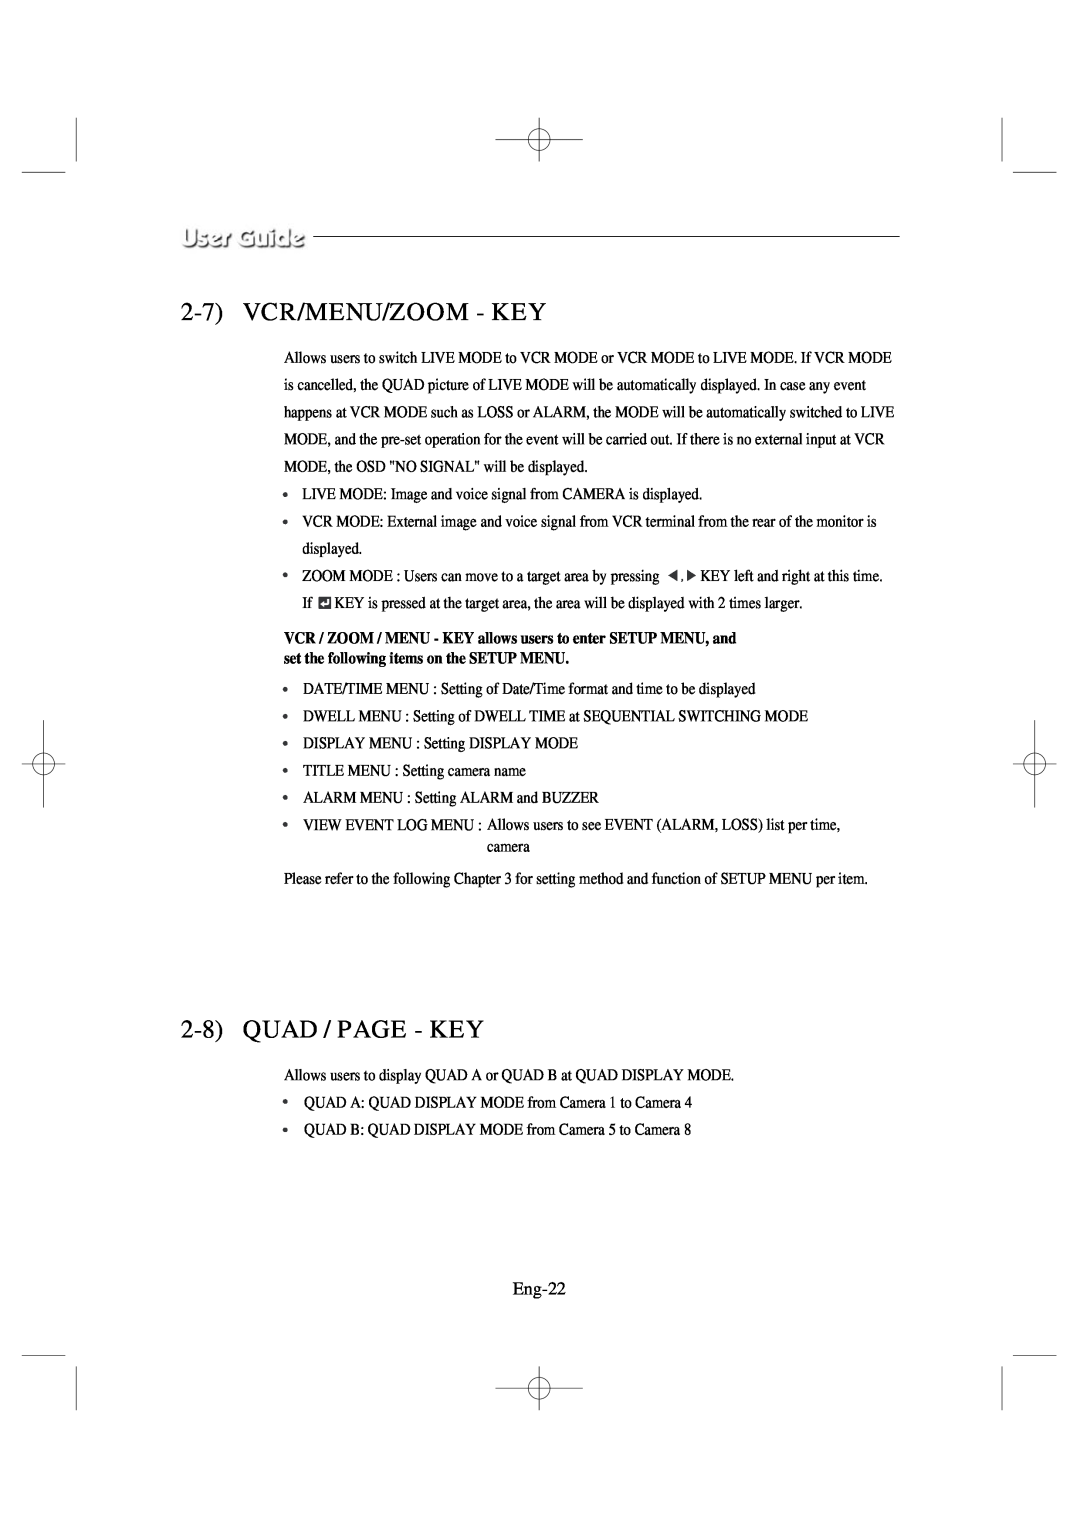 Samsung SSC17WEB manual 2-7VCR/MENU/ZOOM - KEY, 2-8QUAD / PAGE - KEY, Eng-22 